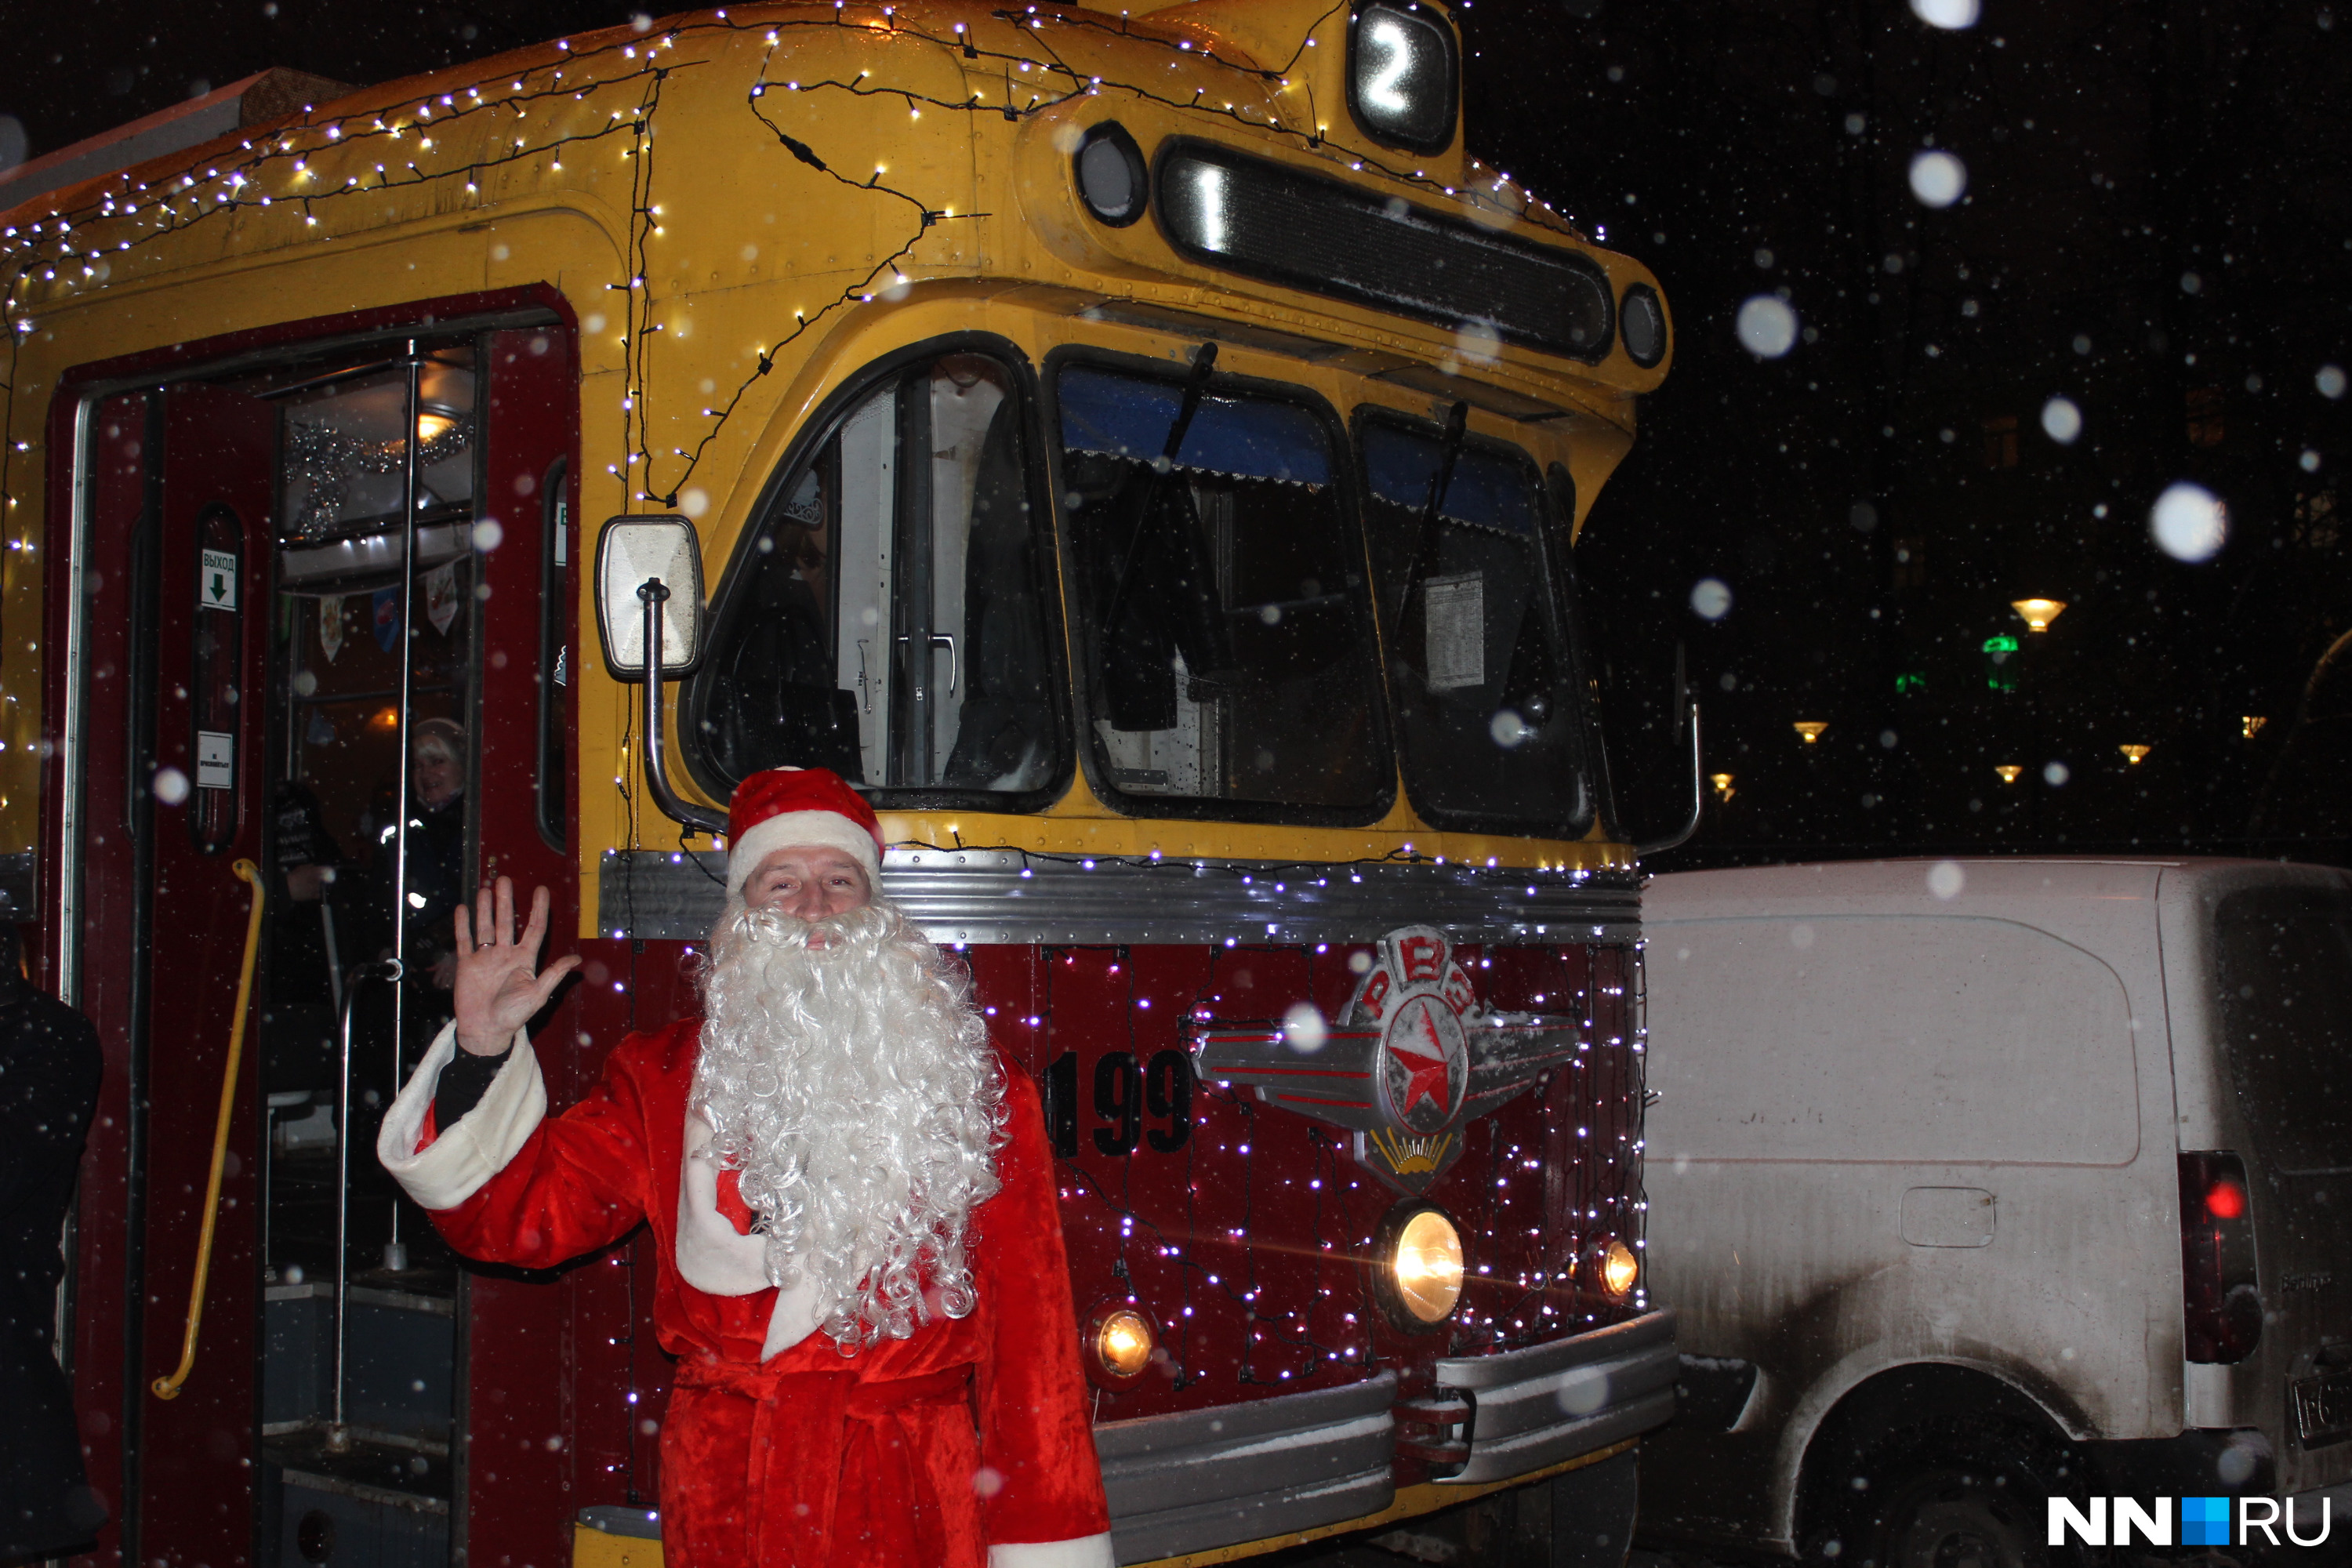 Прокатиться на единственном новогоднем трамвае в Нижнем Новгороде можно будет до конца января